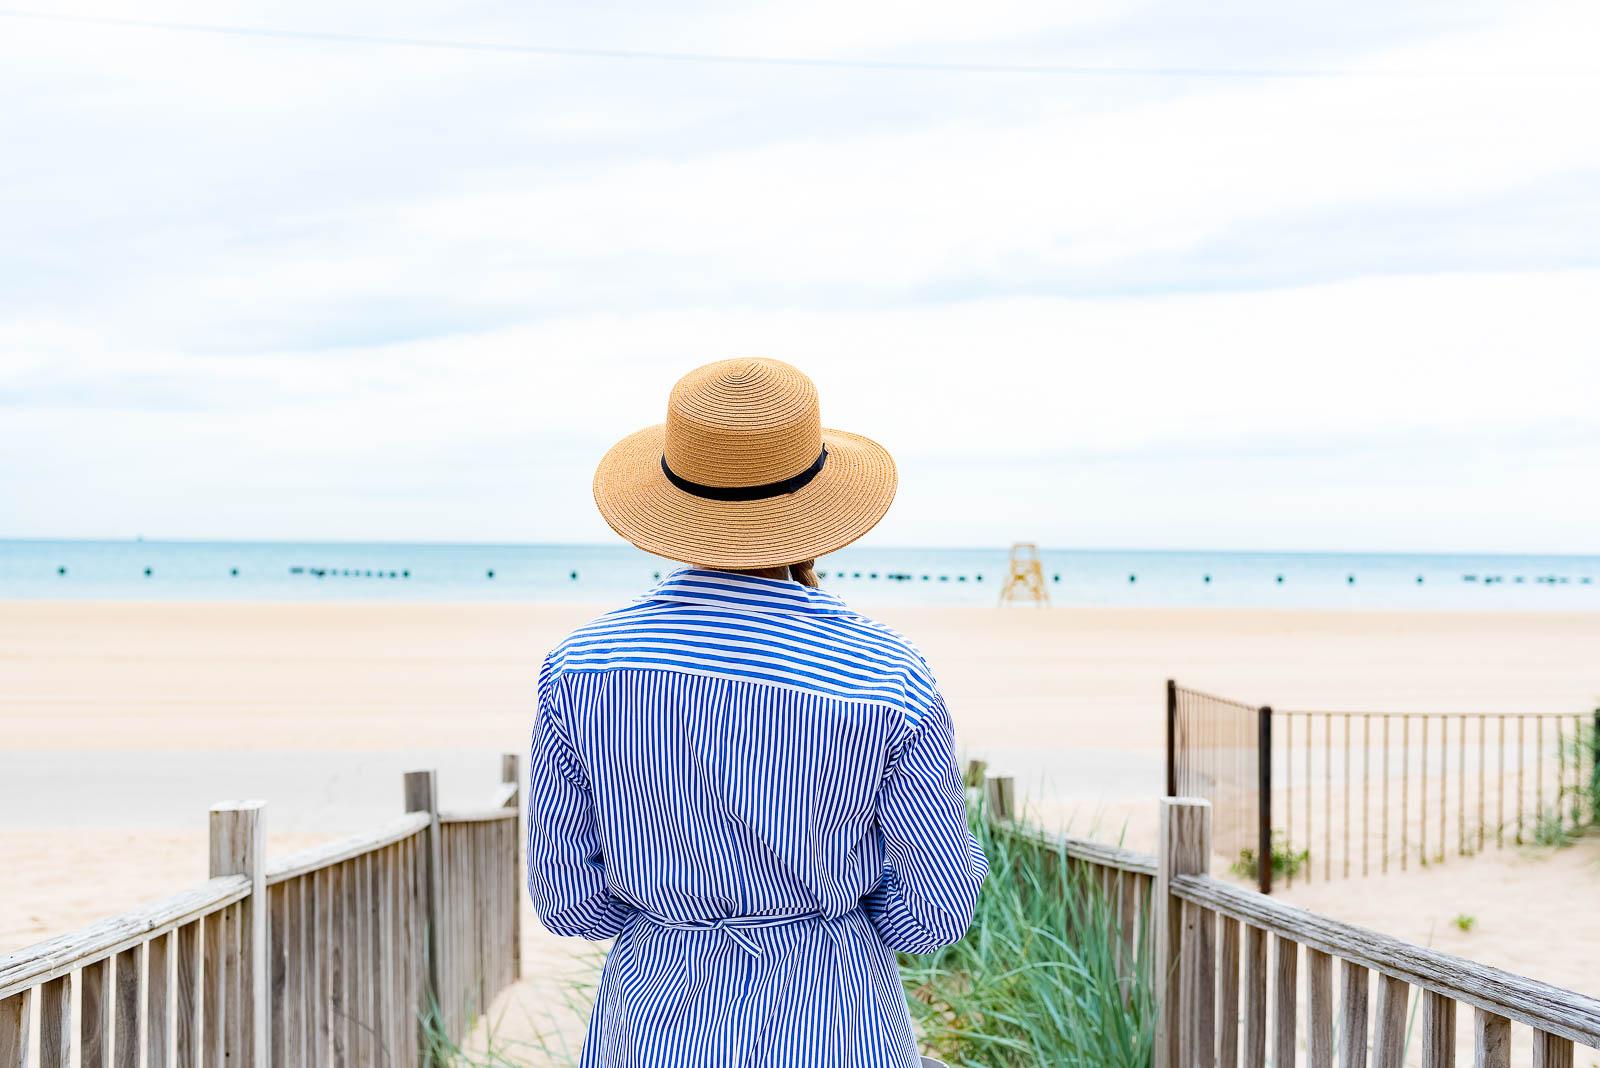 Summer Striped Shirtdress Beach Outfit